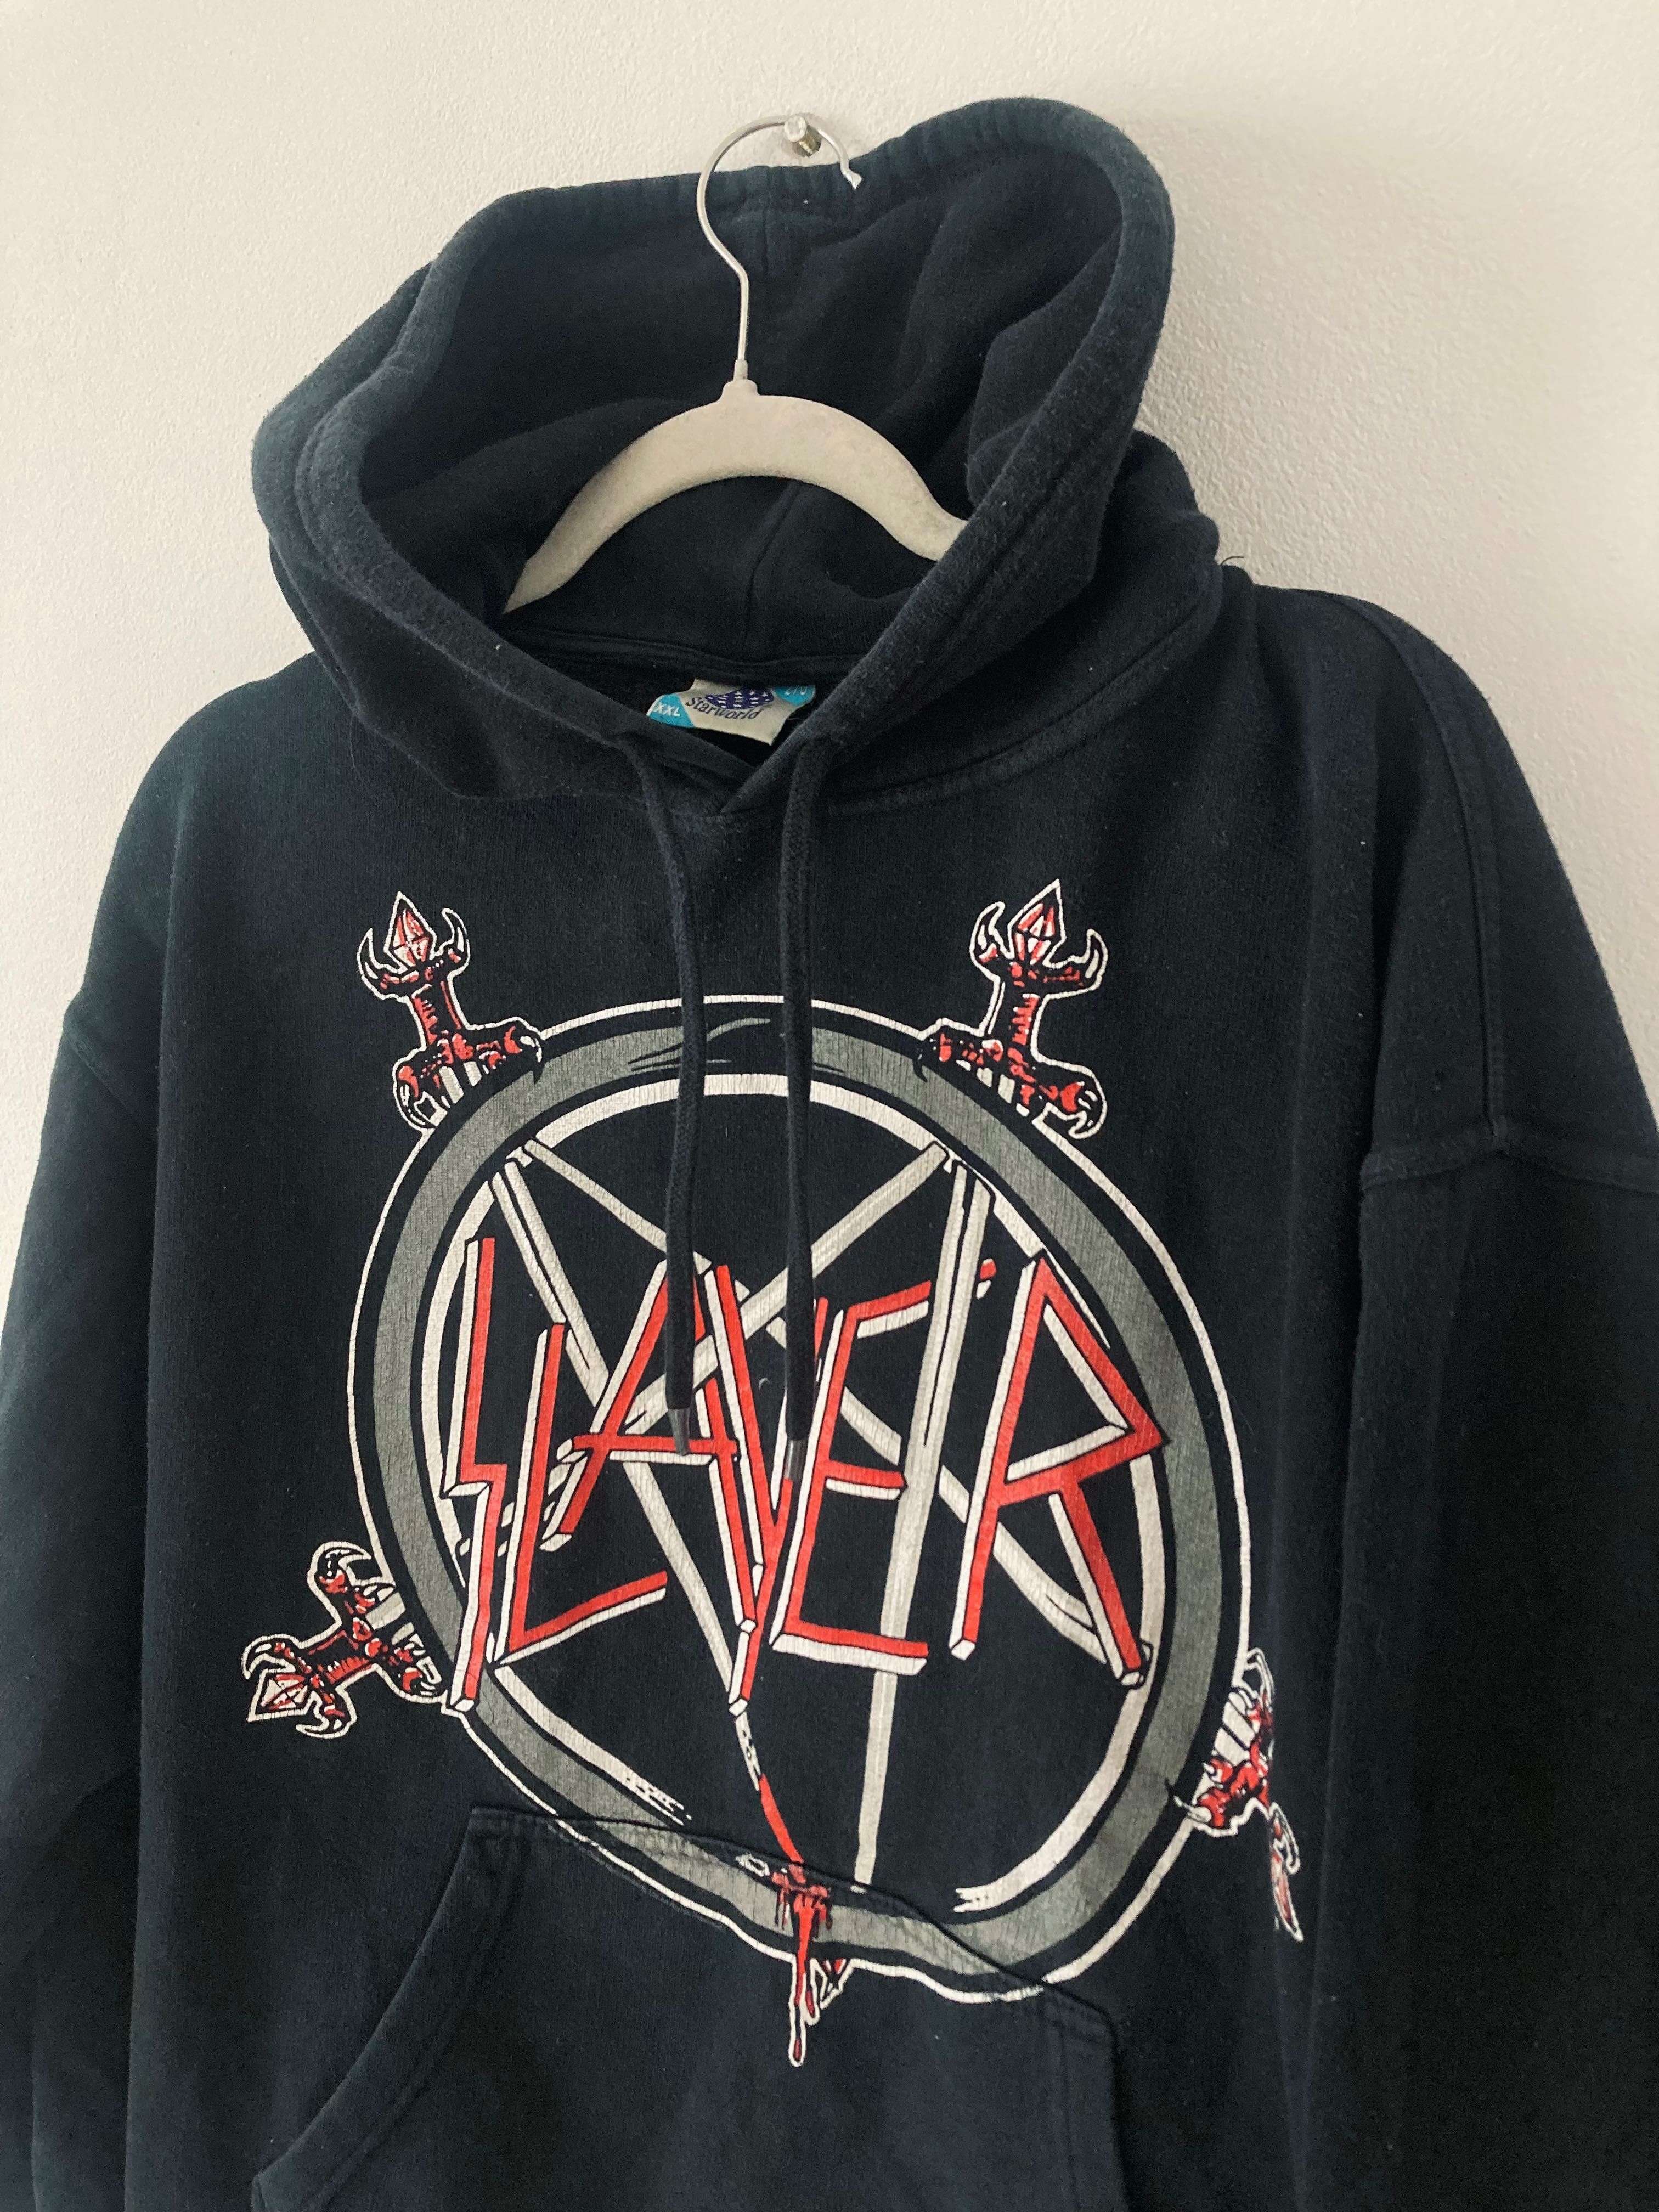 Slayer vintage merch hoodie